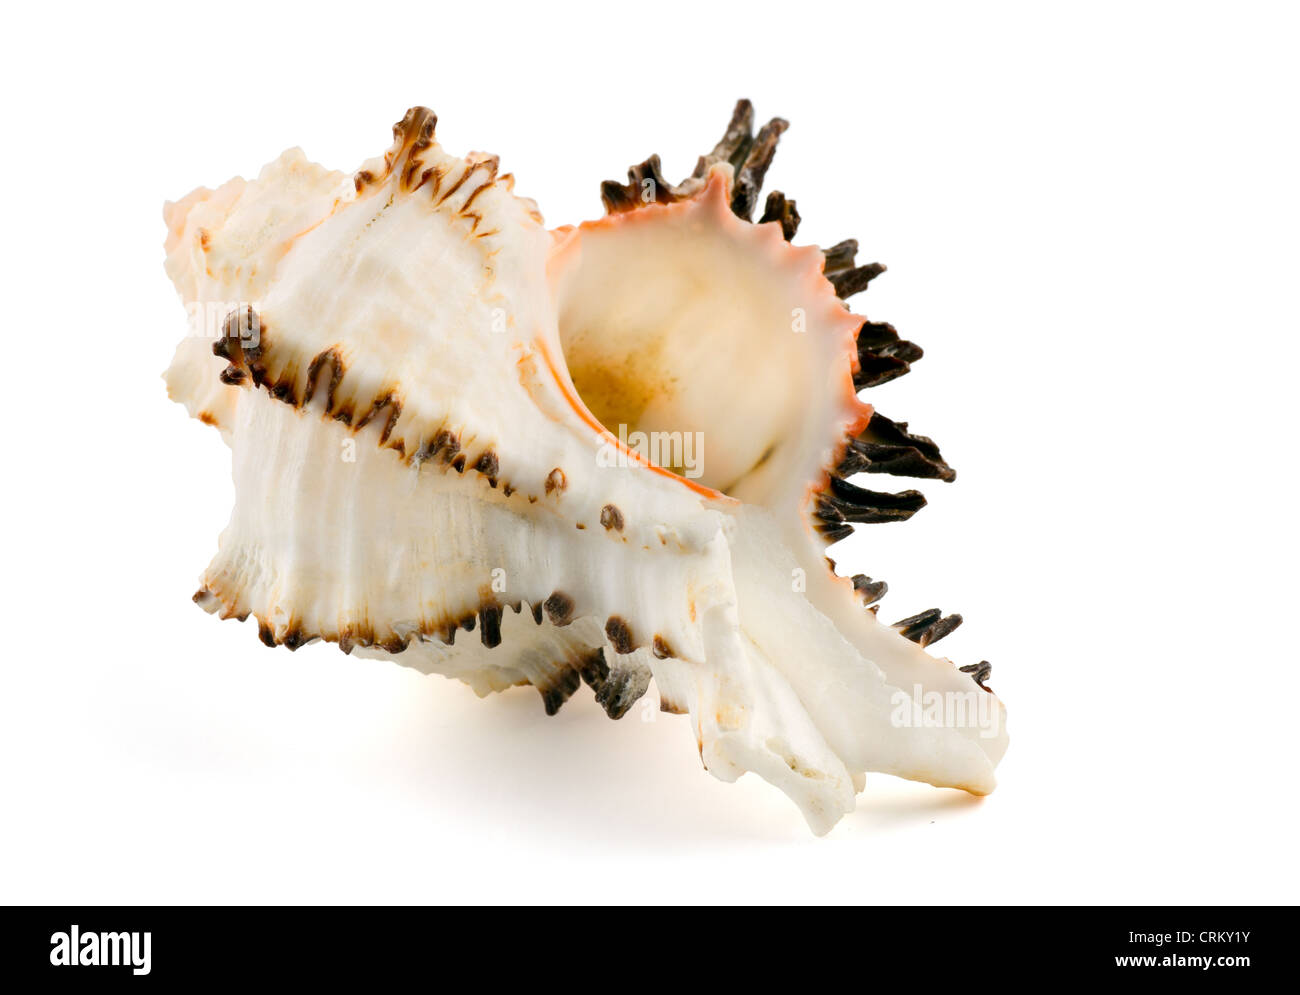 Conchiglia di mare (Murex endivia) isolato su bianco Foto Stock